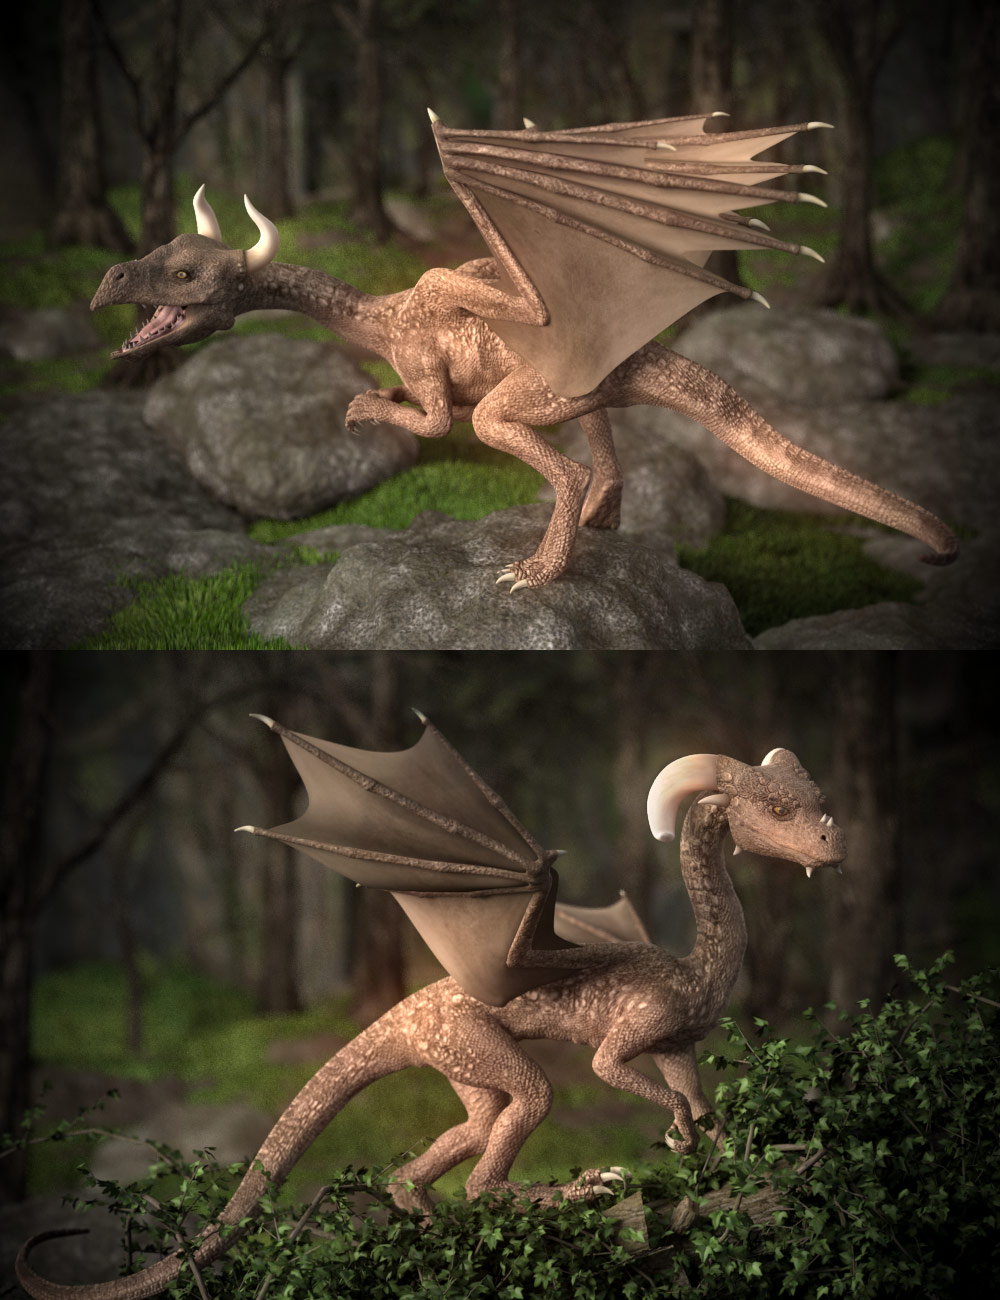 Capsces Shapes for DAZ Dragon 3 by: Capsces Digital Ink, 3D Models by Daz 3D